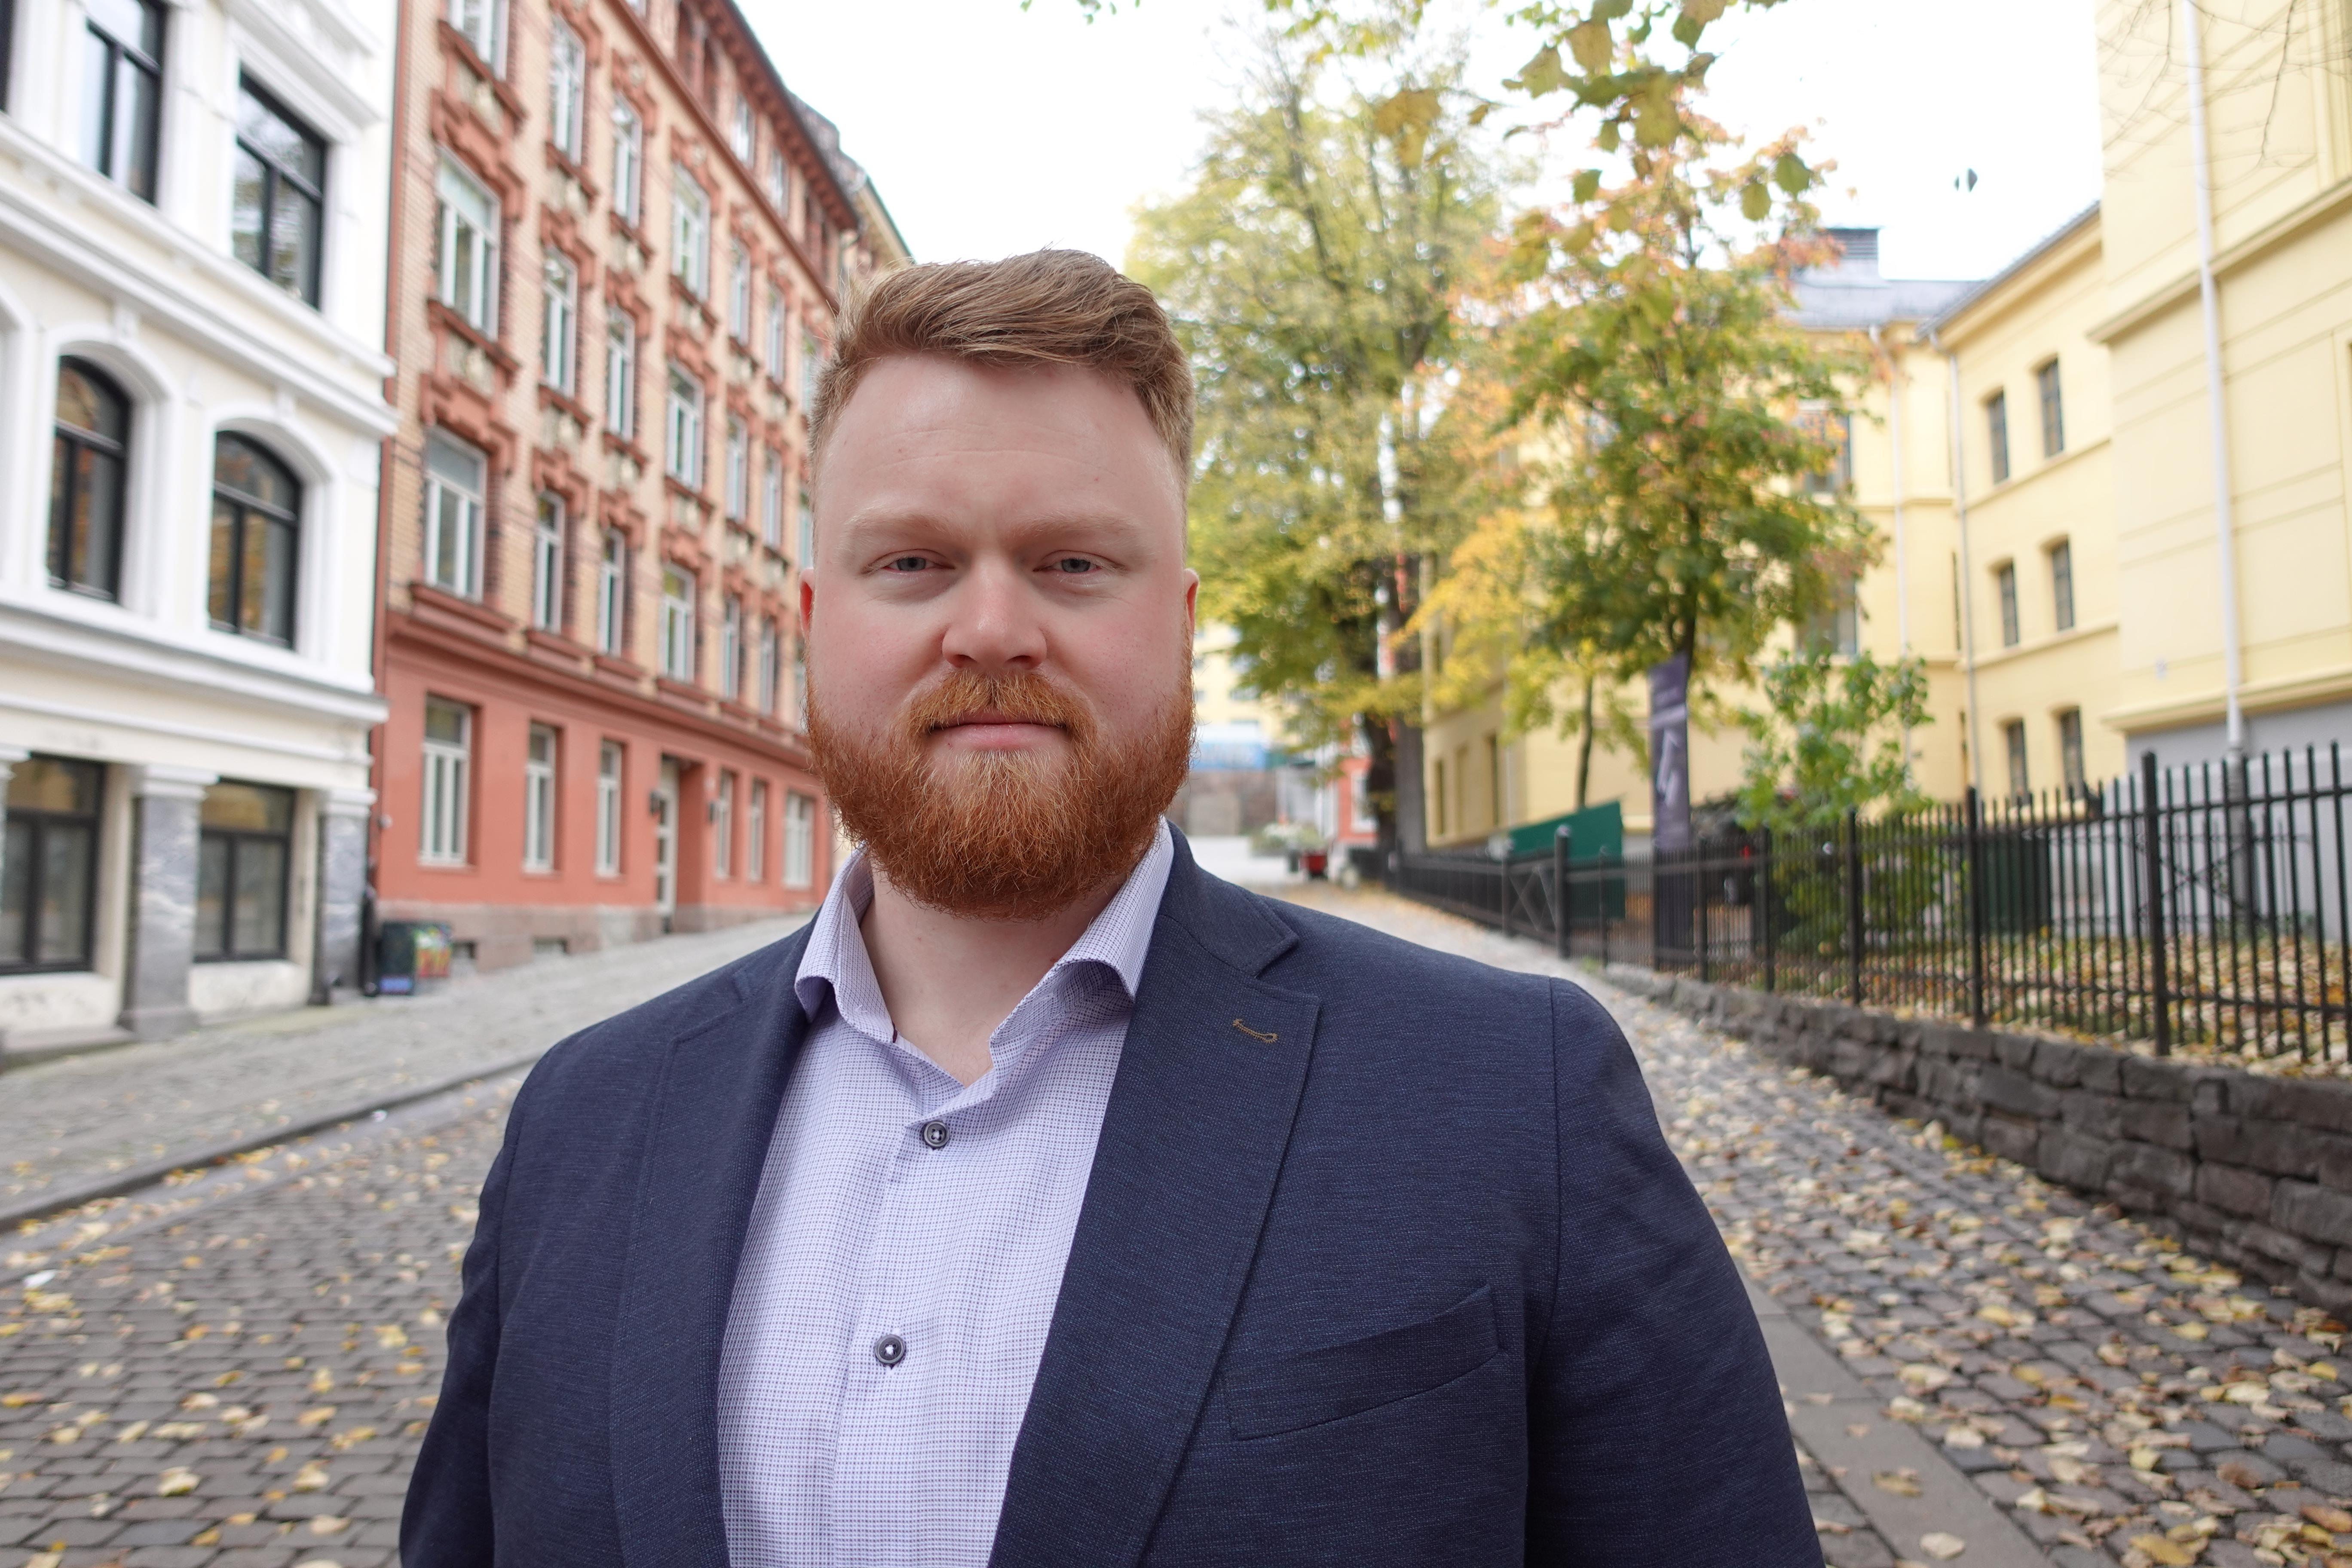 Bilde av Lars Strande Syrrist. Smilende mann med rødt hår og skjegg, kledd i lys skjorte og mørk blazer. Står foran gate med flere bygg. 